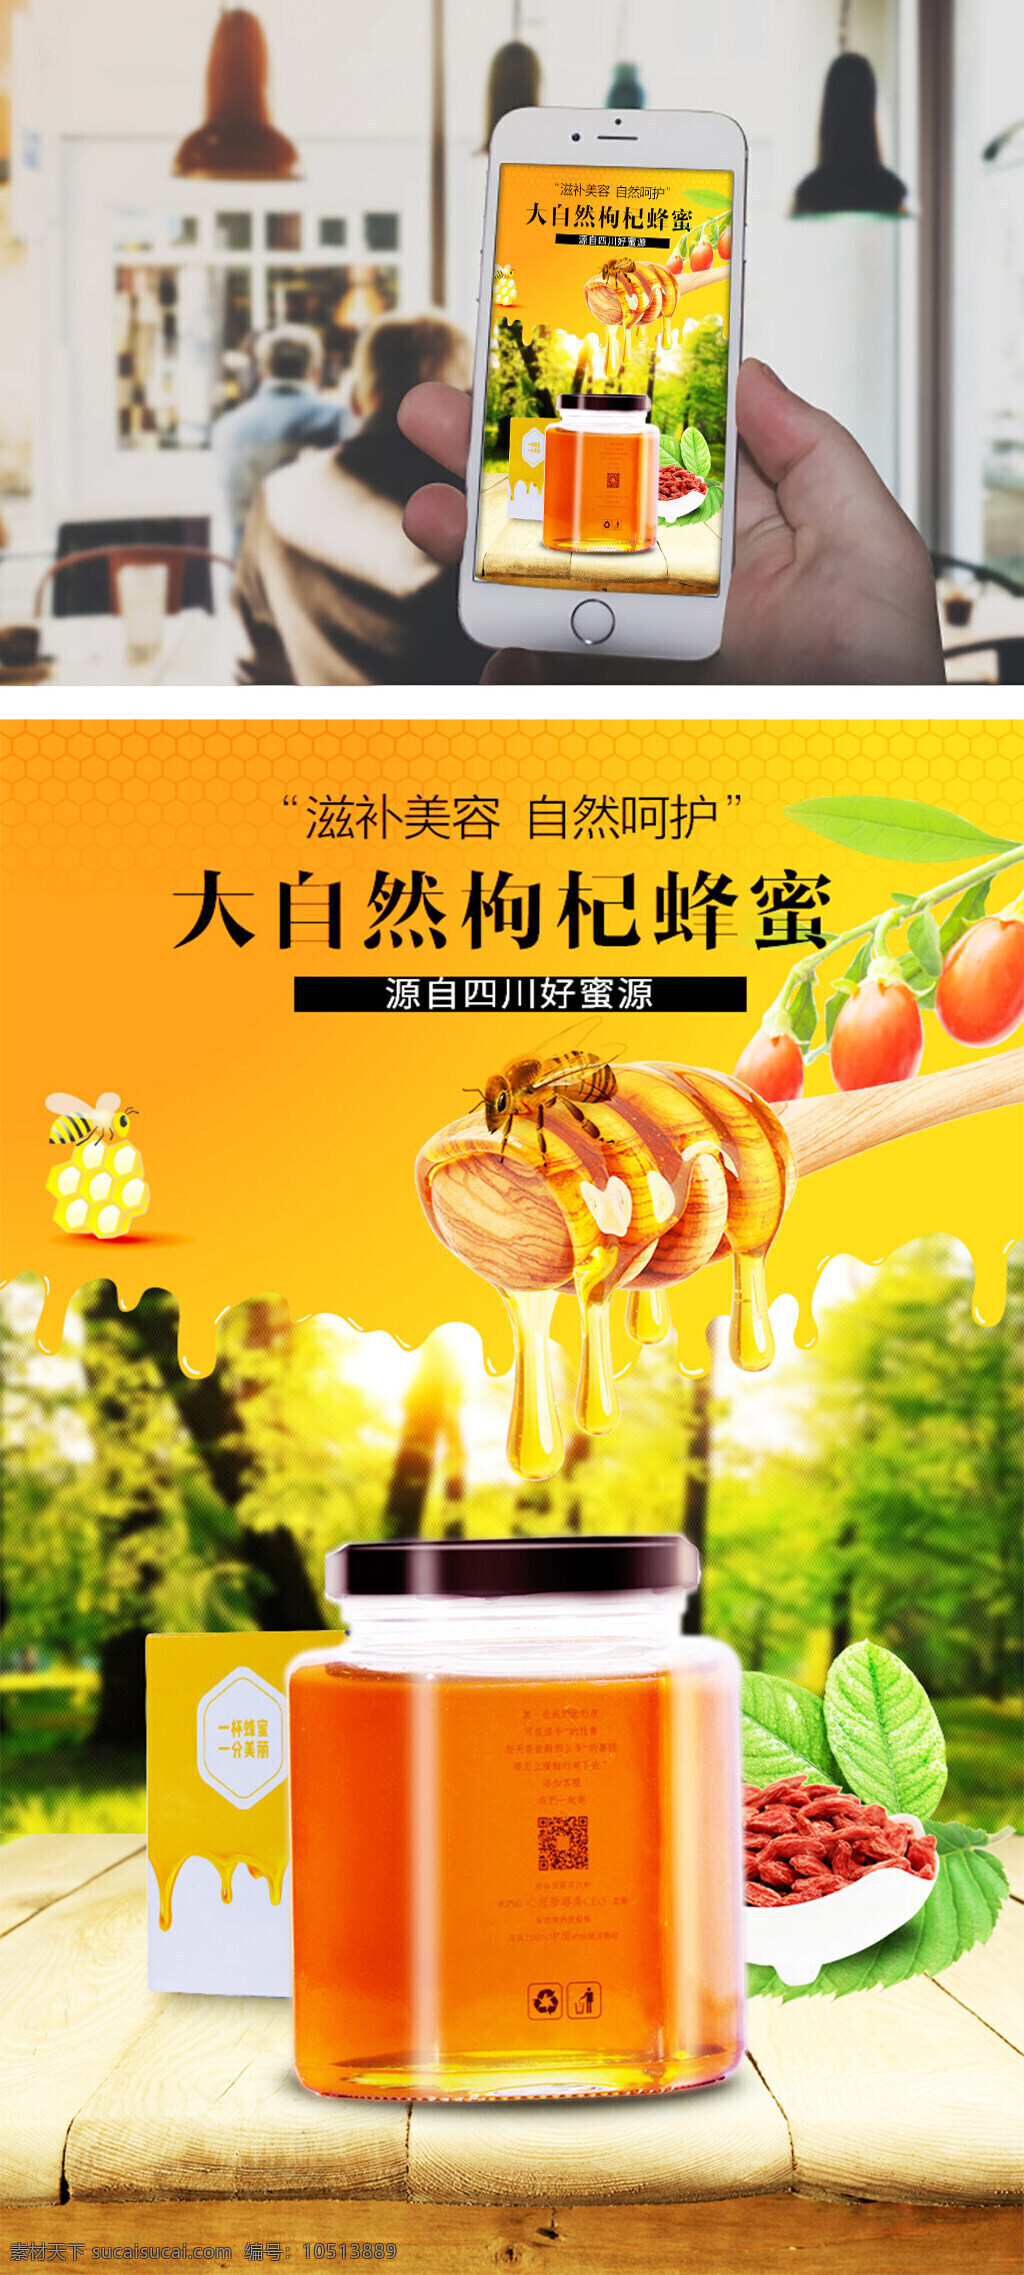 天猫 淘宝 jd 枸杞 蜂蜜 详情 页 app 海报 京东蜂蜜海报 蜂蜜海报